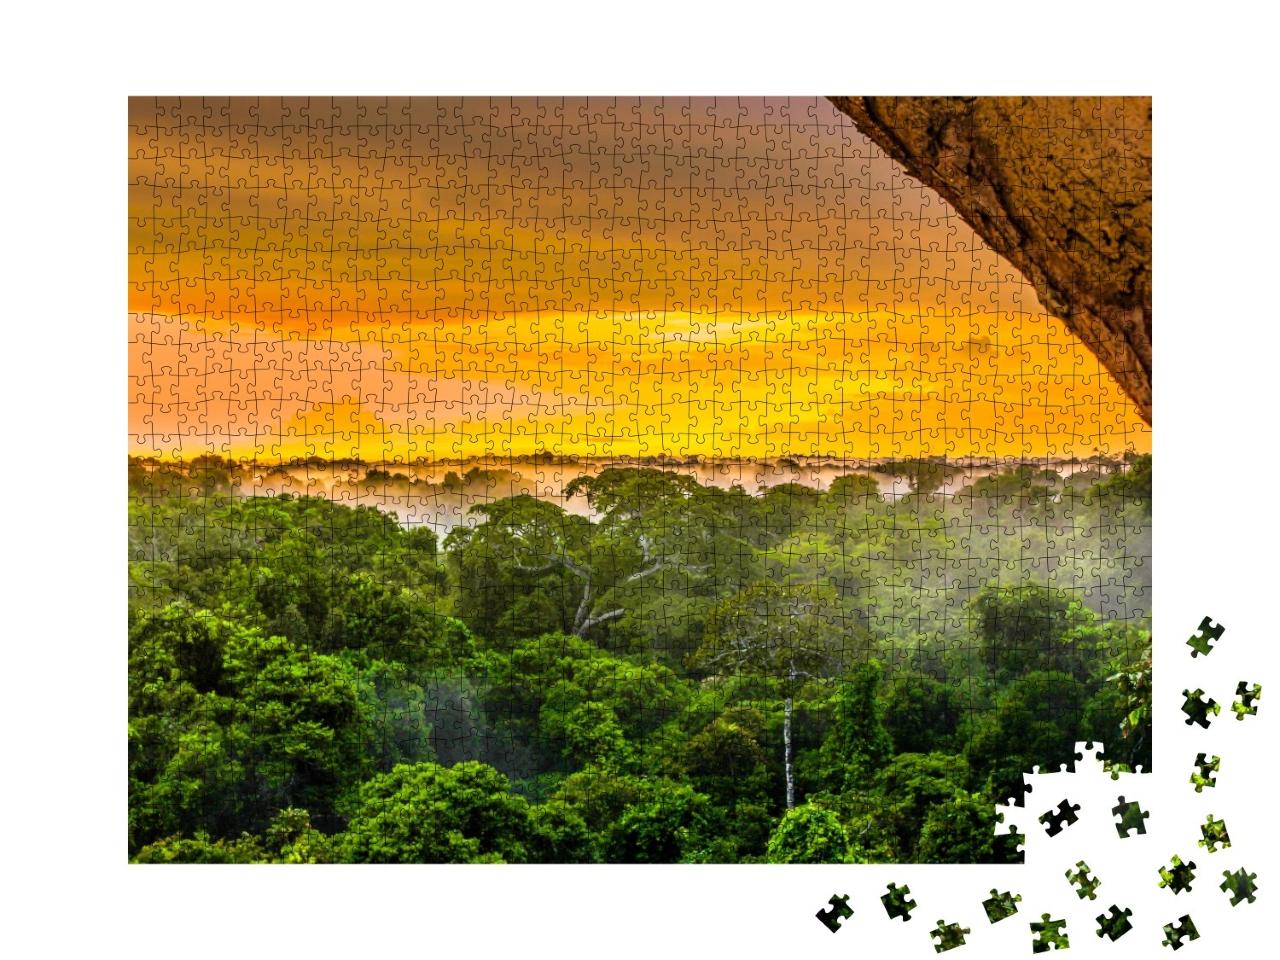 Puzzle de 1000 pièces « Coucher de soleil dans la forêt amazonienne, Brésil »